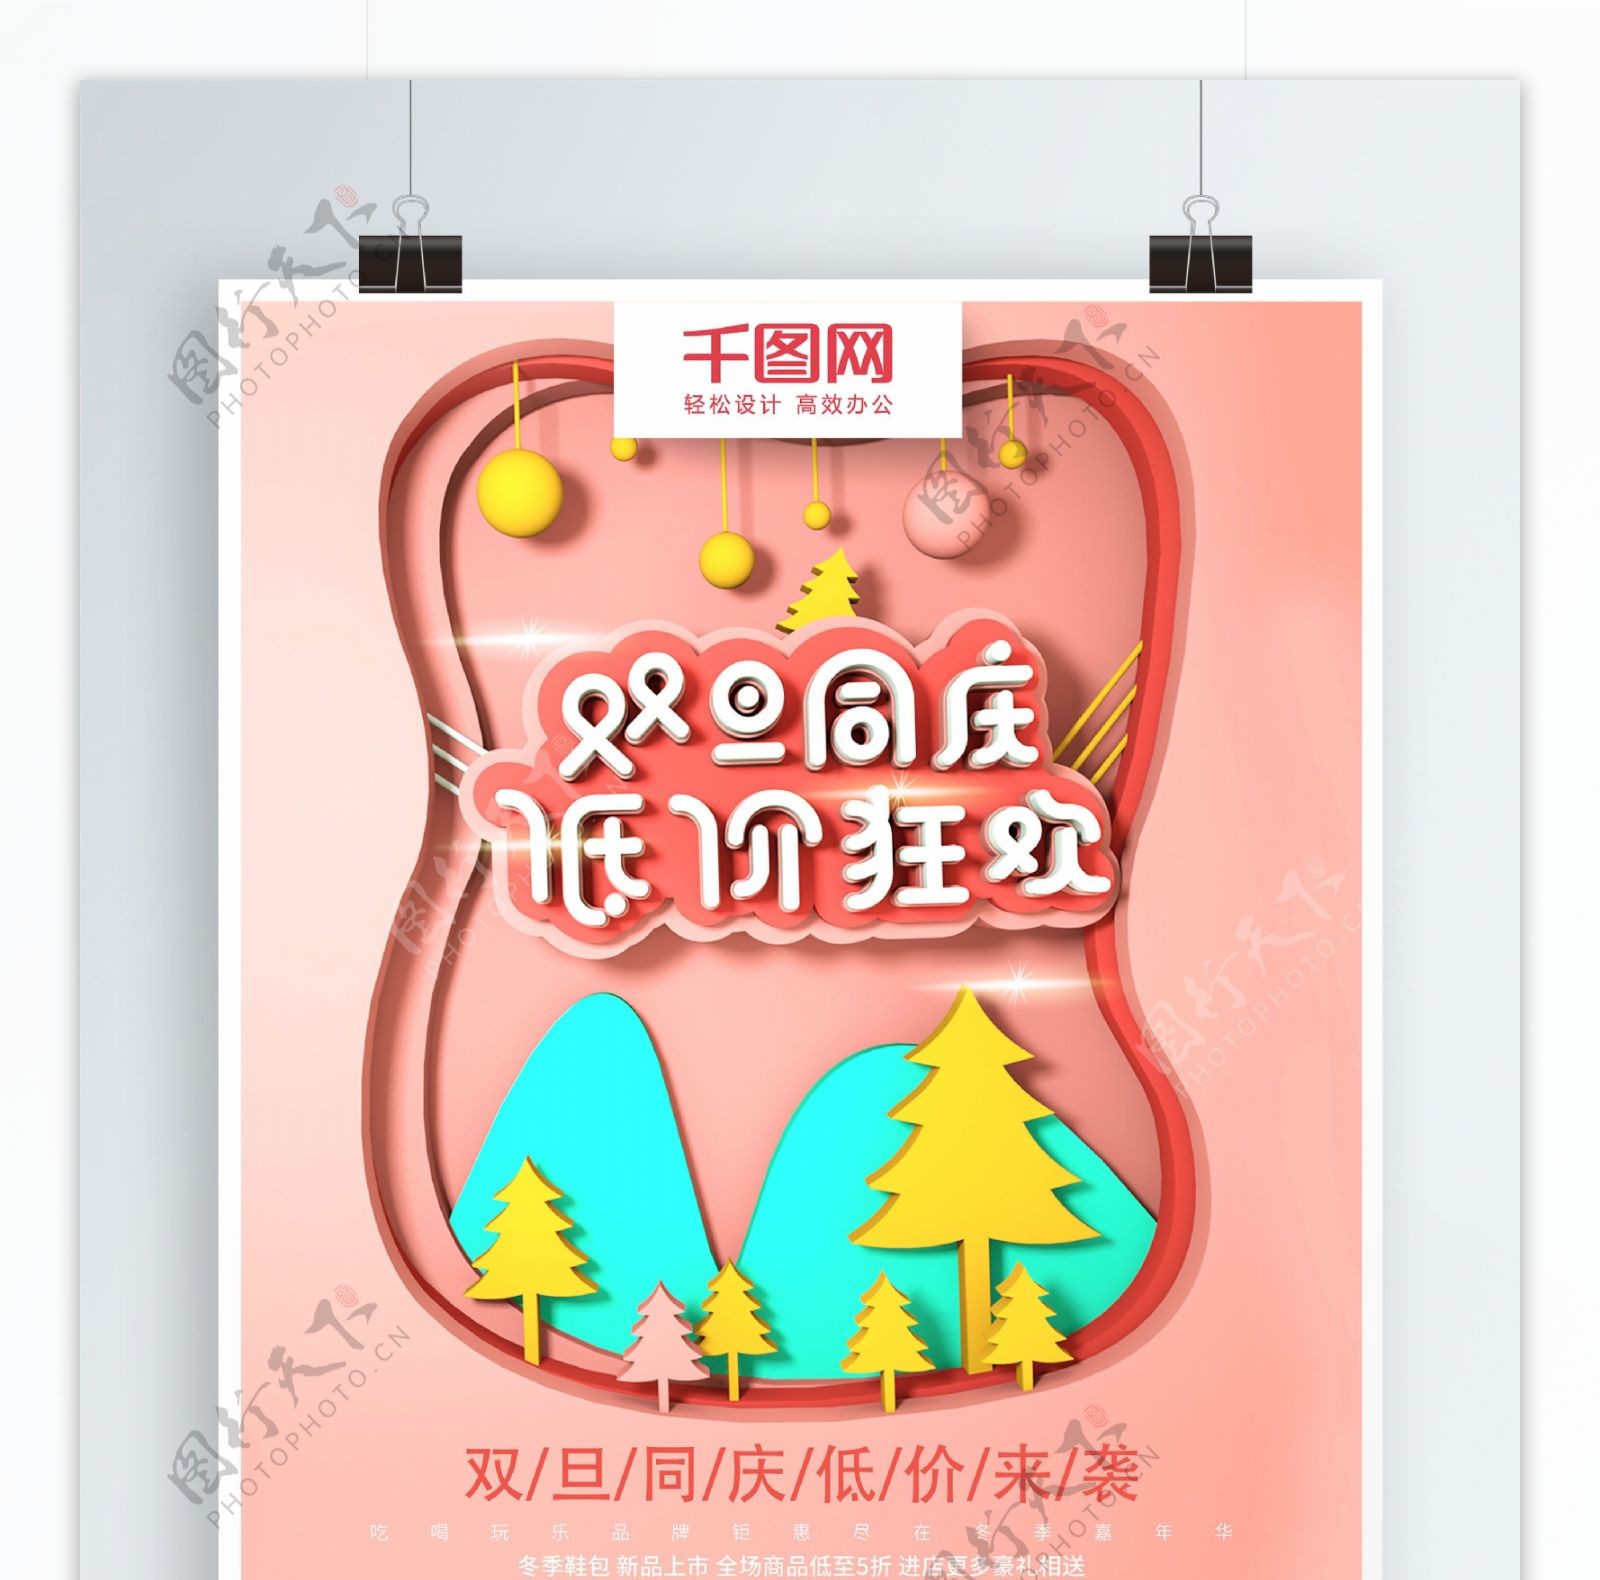 C4D珊瑚红中国风双旦促销活动海报设计